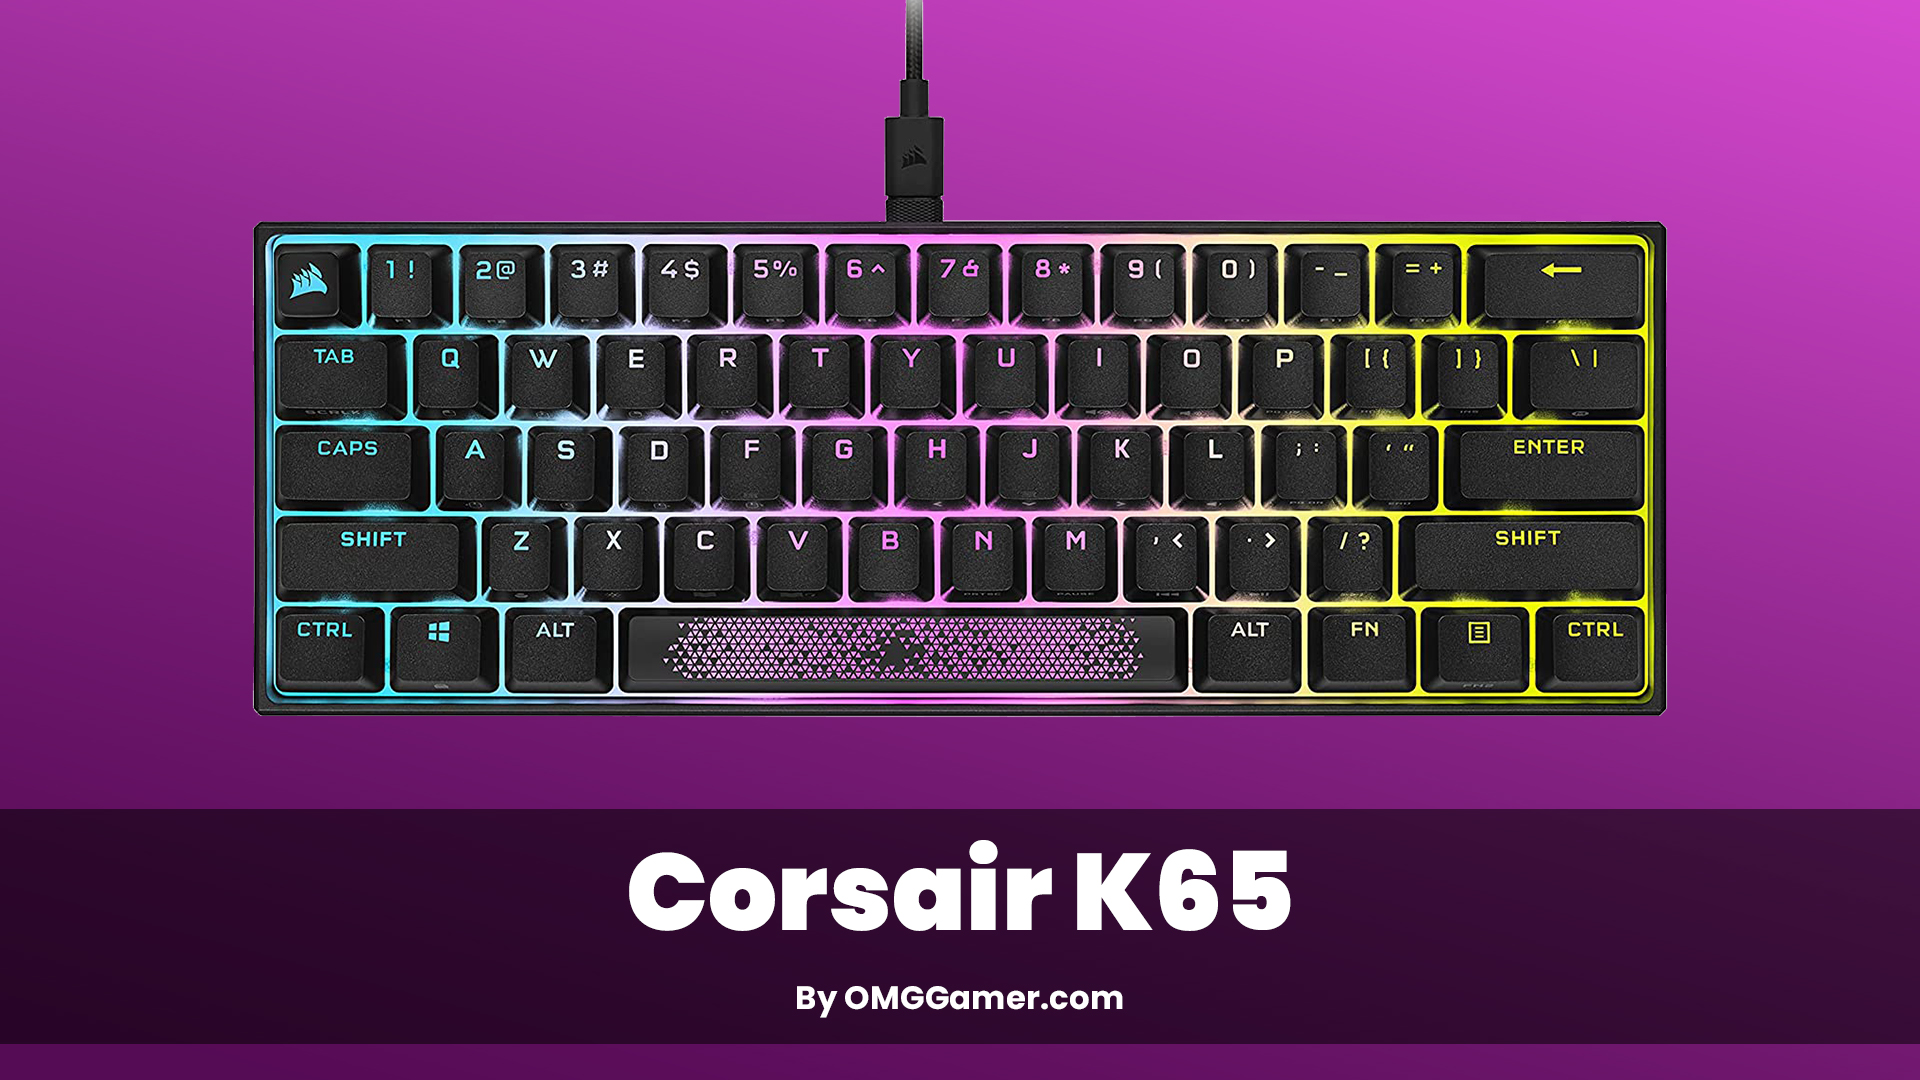 Corsair K65: Small Gaming Keyboard